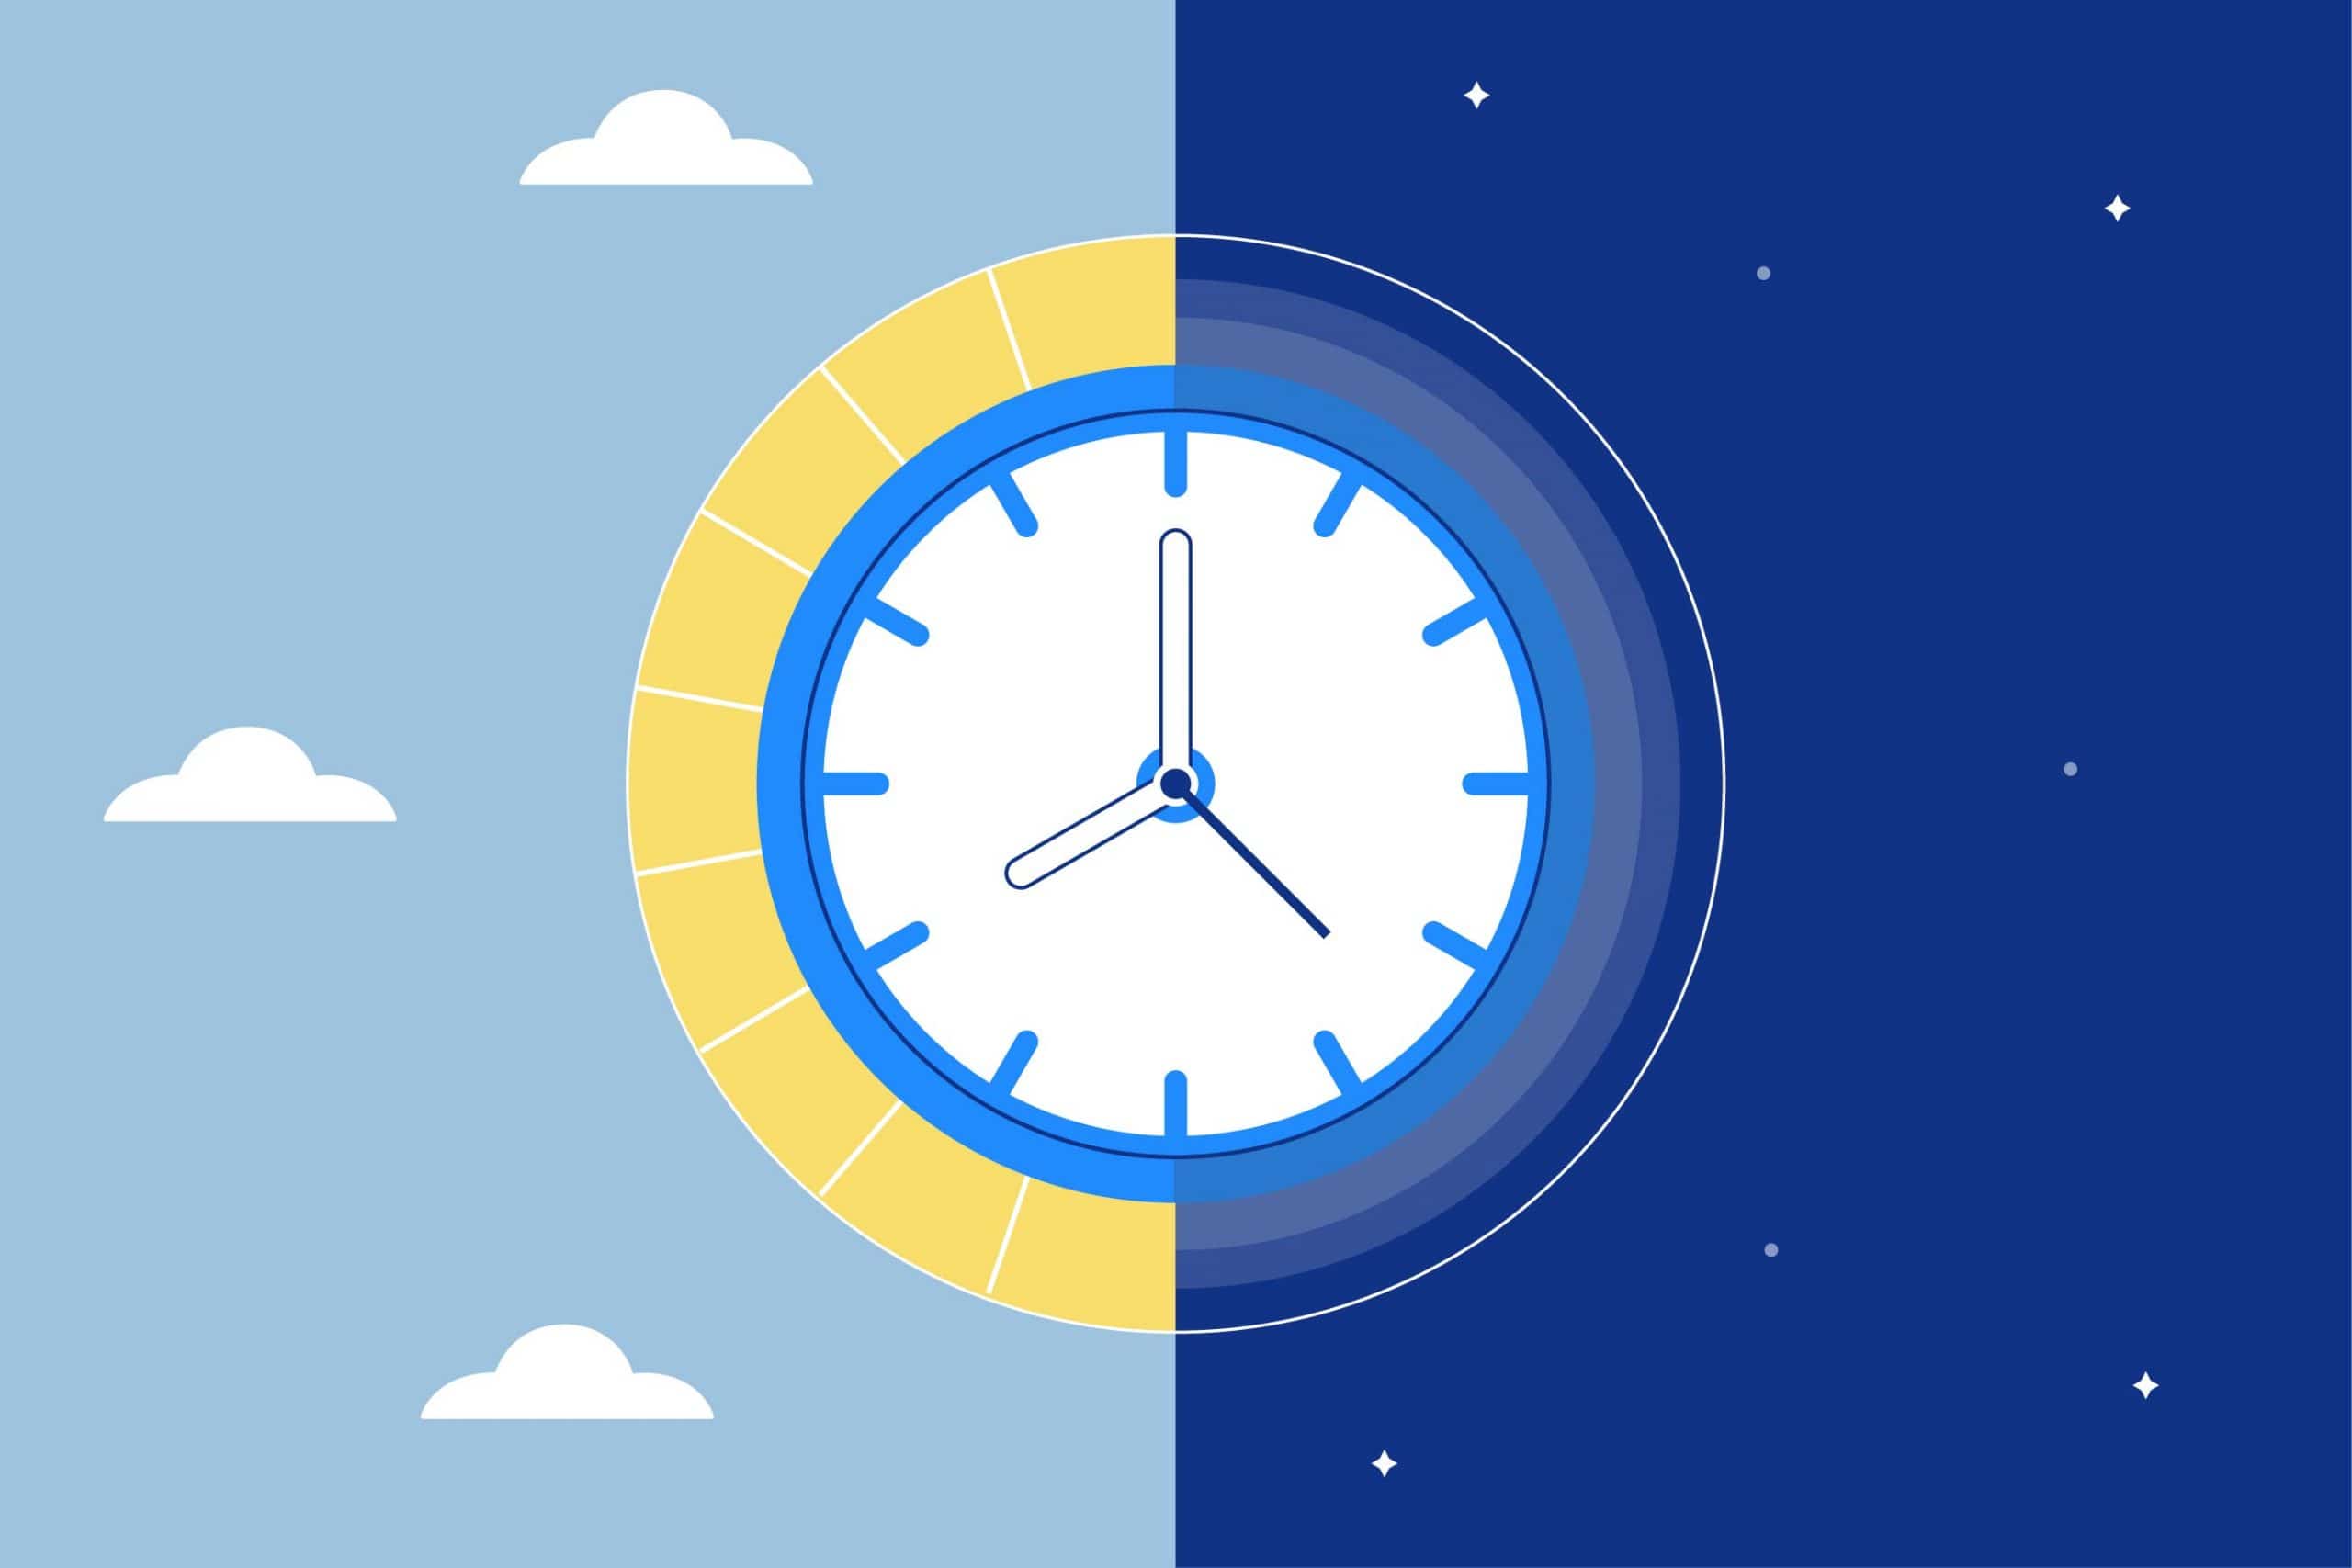 Reset Your Broken Internal Sleep Clock & Fix Sleep Schedule